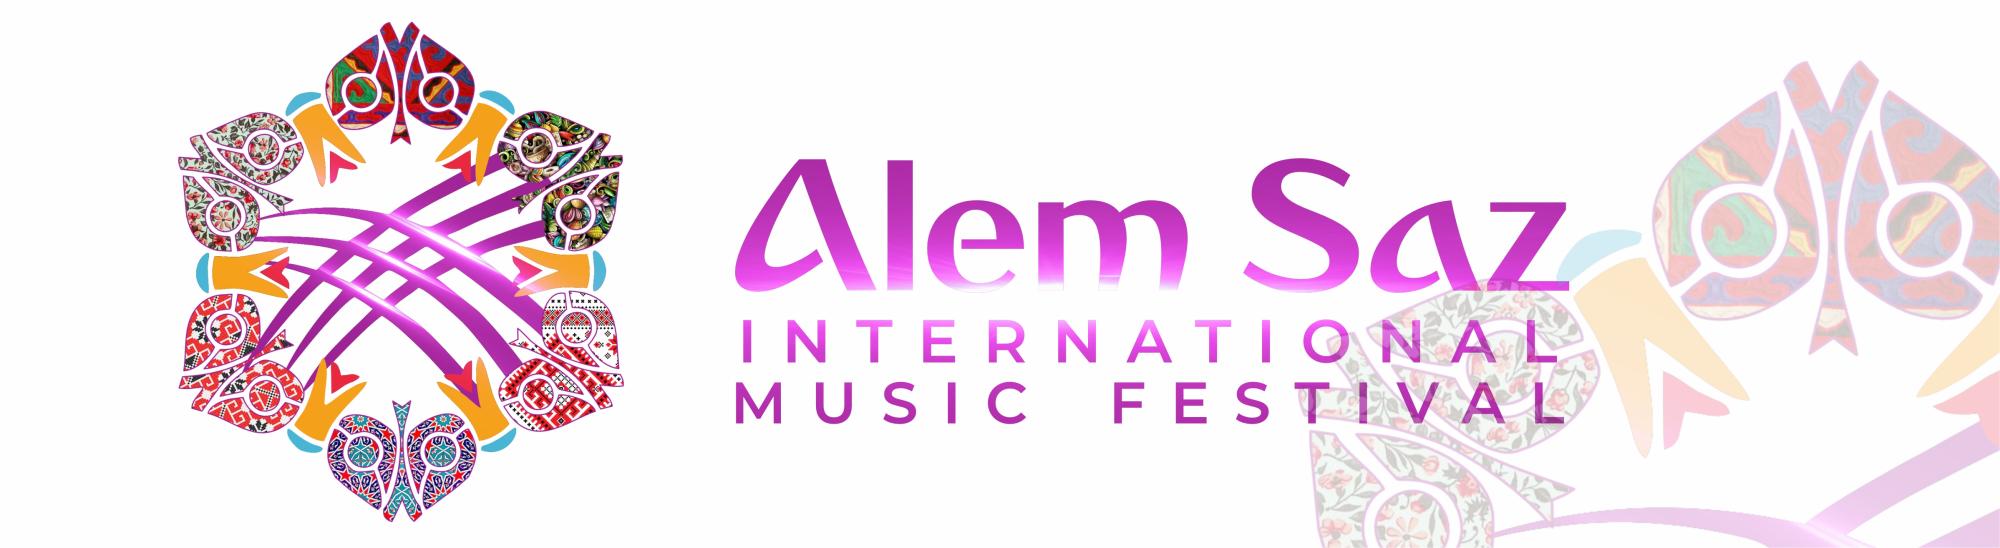 Межународный фестиваль музыки «Alem Saz»